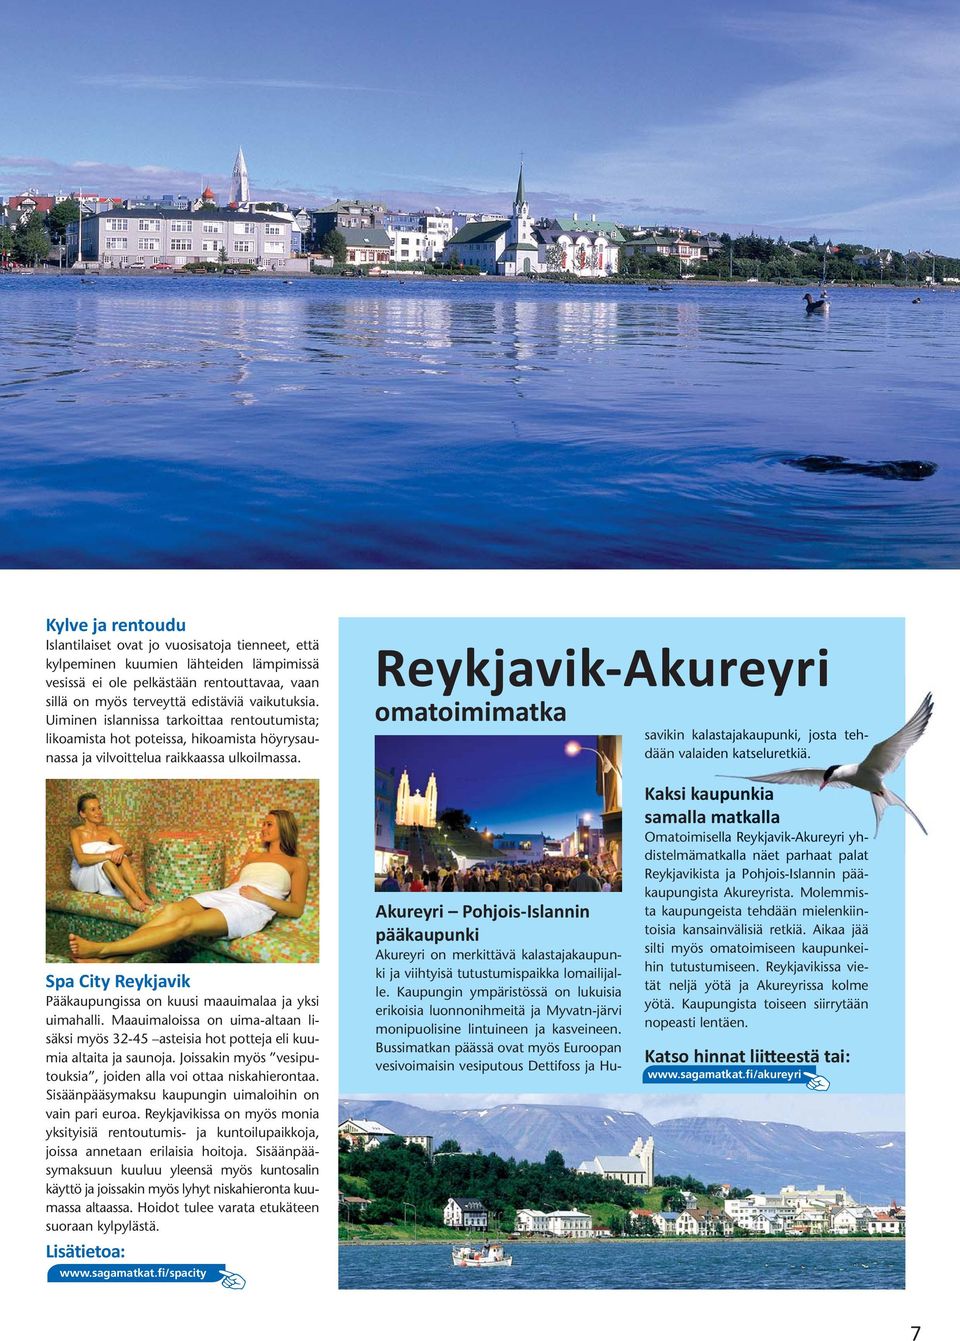 Reykjavik-Akureyri omatoimimatka savikin kalastajakaupunki, josta tehdään valaiden katseluretkiä. Spa City Reykjavik Pääkaupungissa on kuusi maauimalaa ja yksi uimahalli.